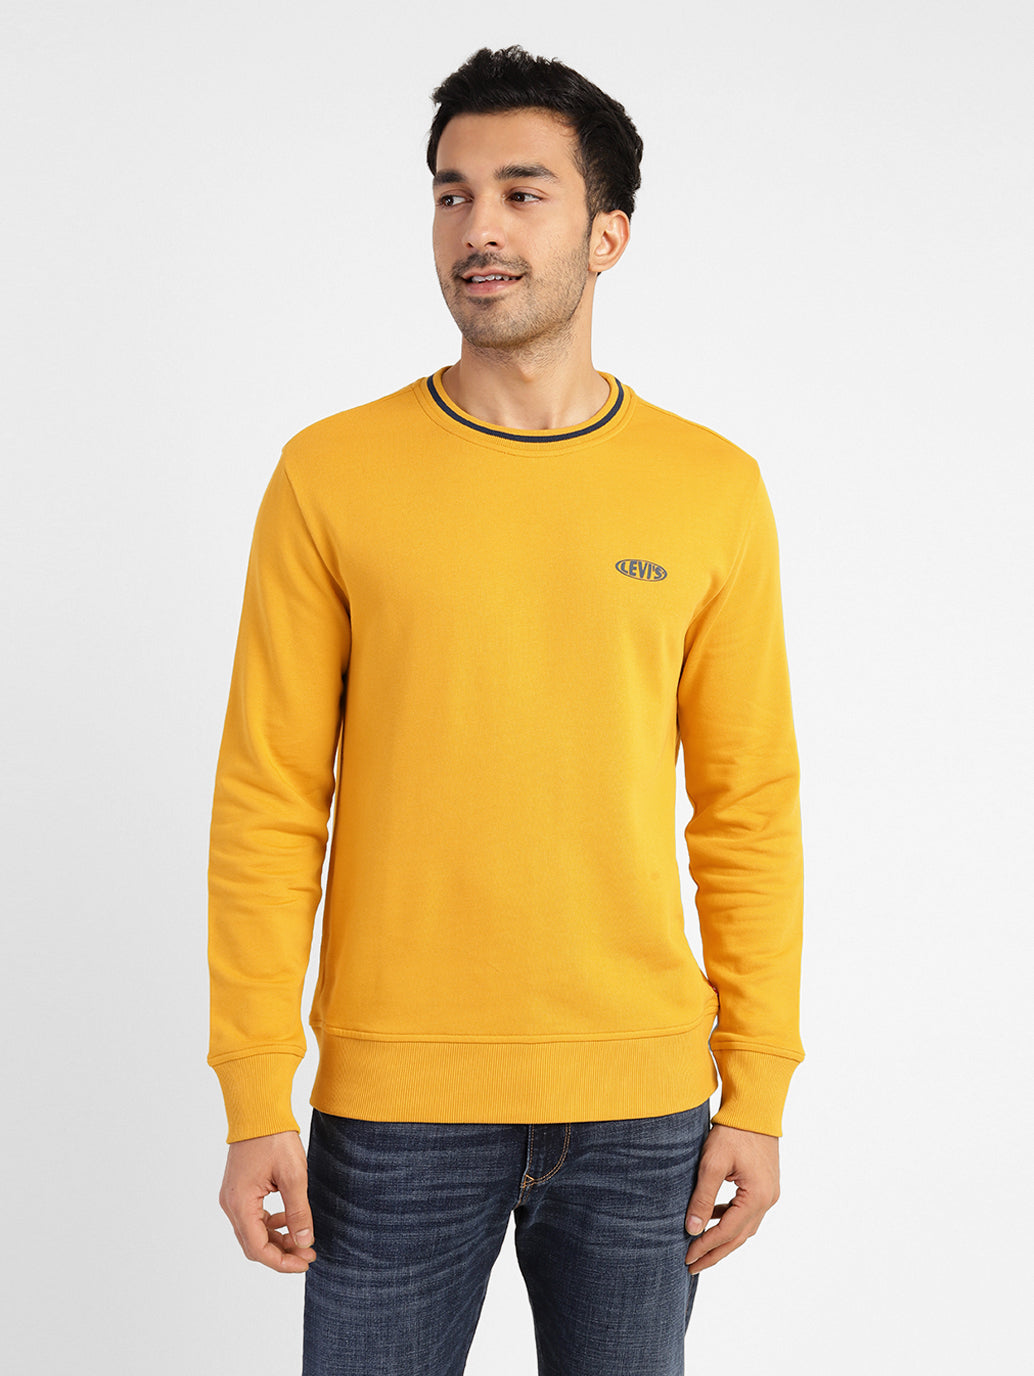 Men's Solid Crew Neck Sweatshirt